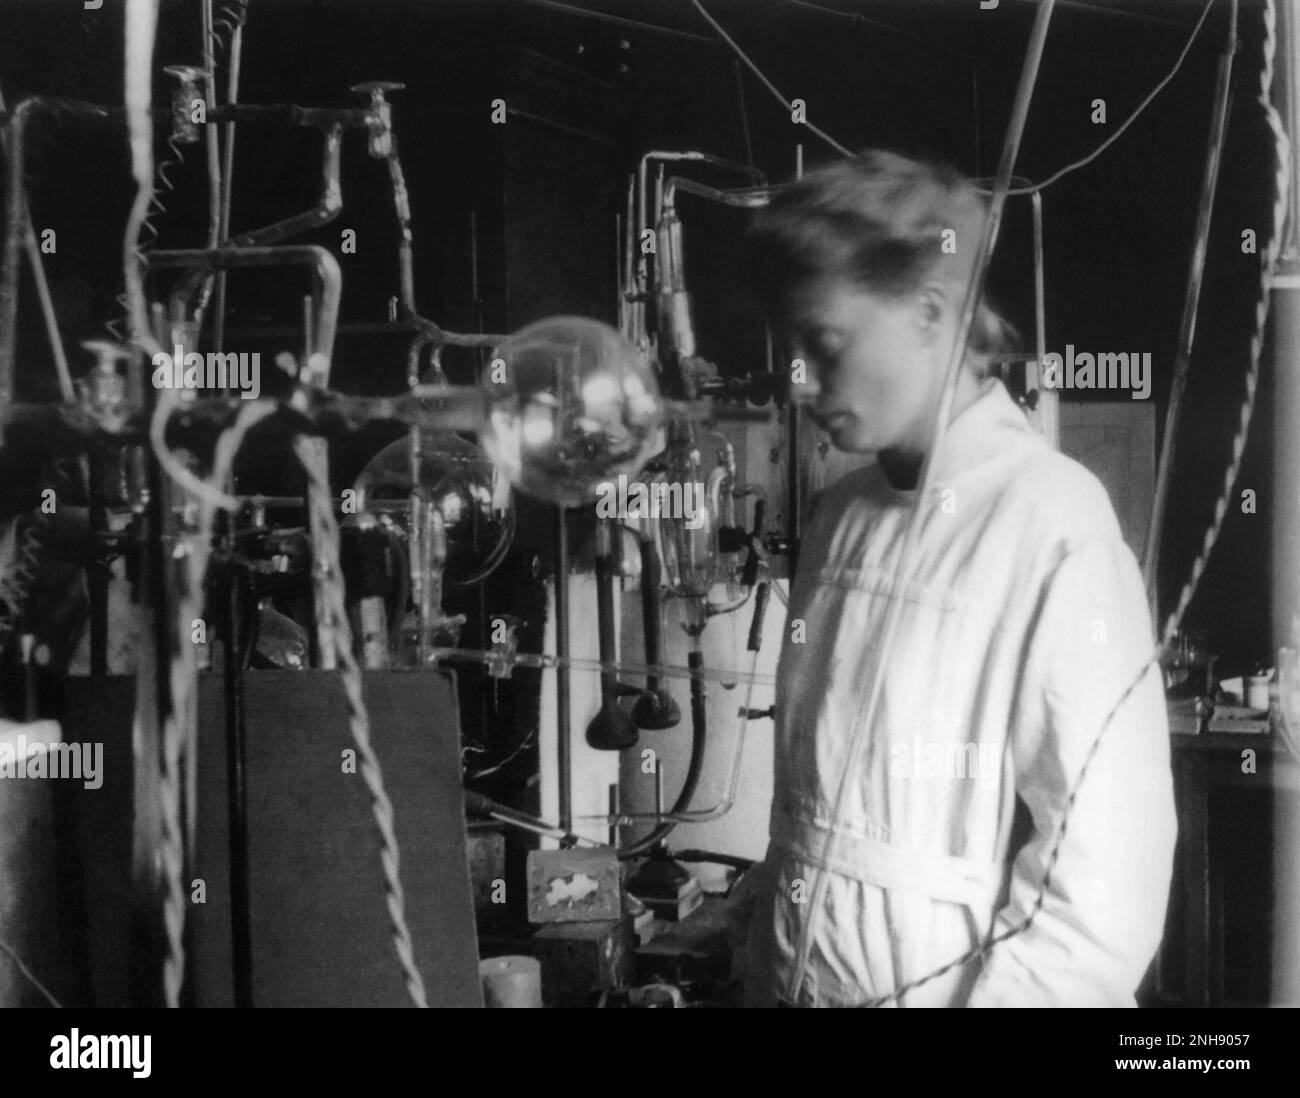 Hertha Sponer (1895-1968), fisico e chimico tedesco, che lavora con attrezzature in laboratorio. Sponer contribuì alla moderna meccanica quantistica e alla fisica molecolare. Foto Stock